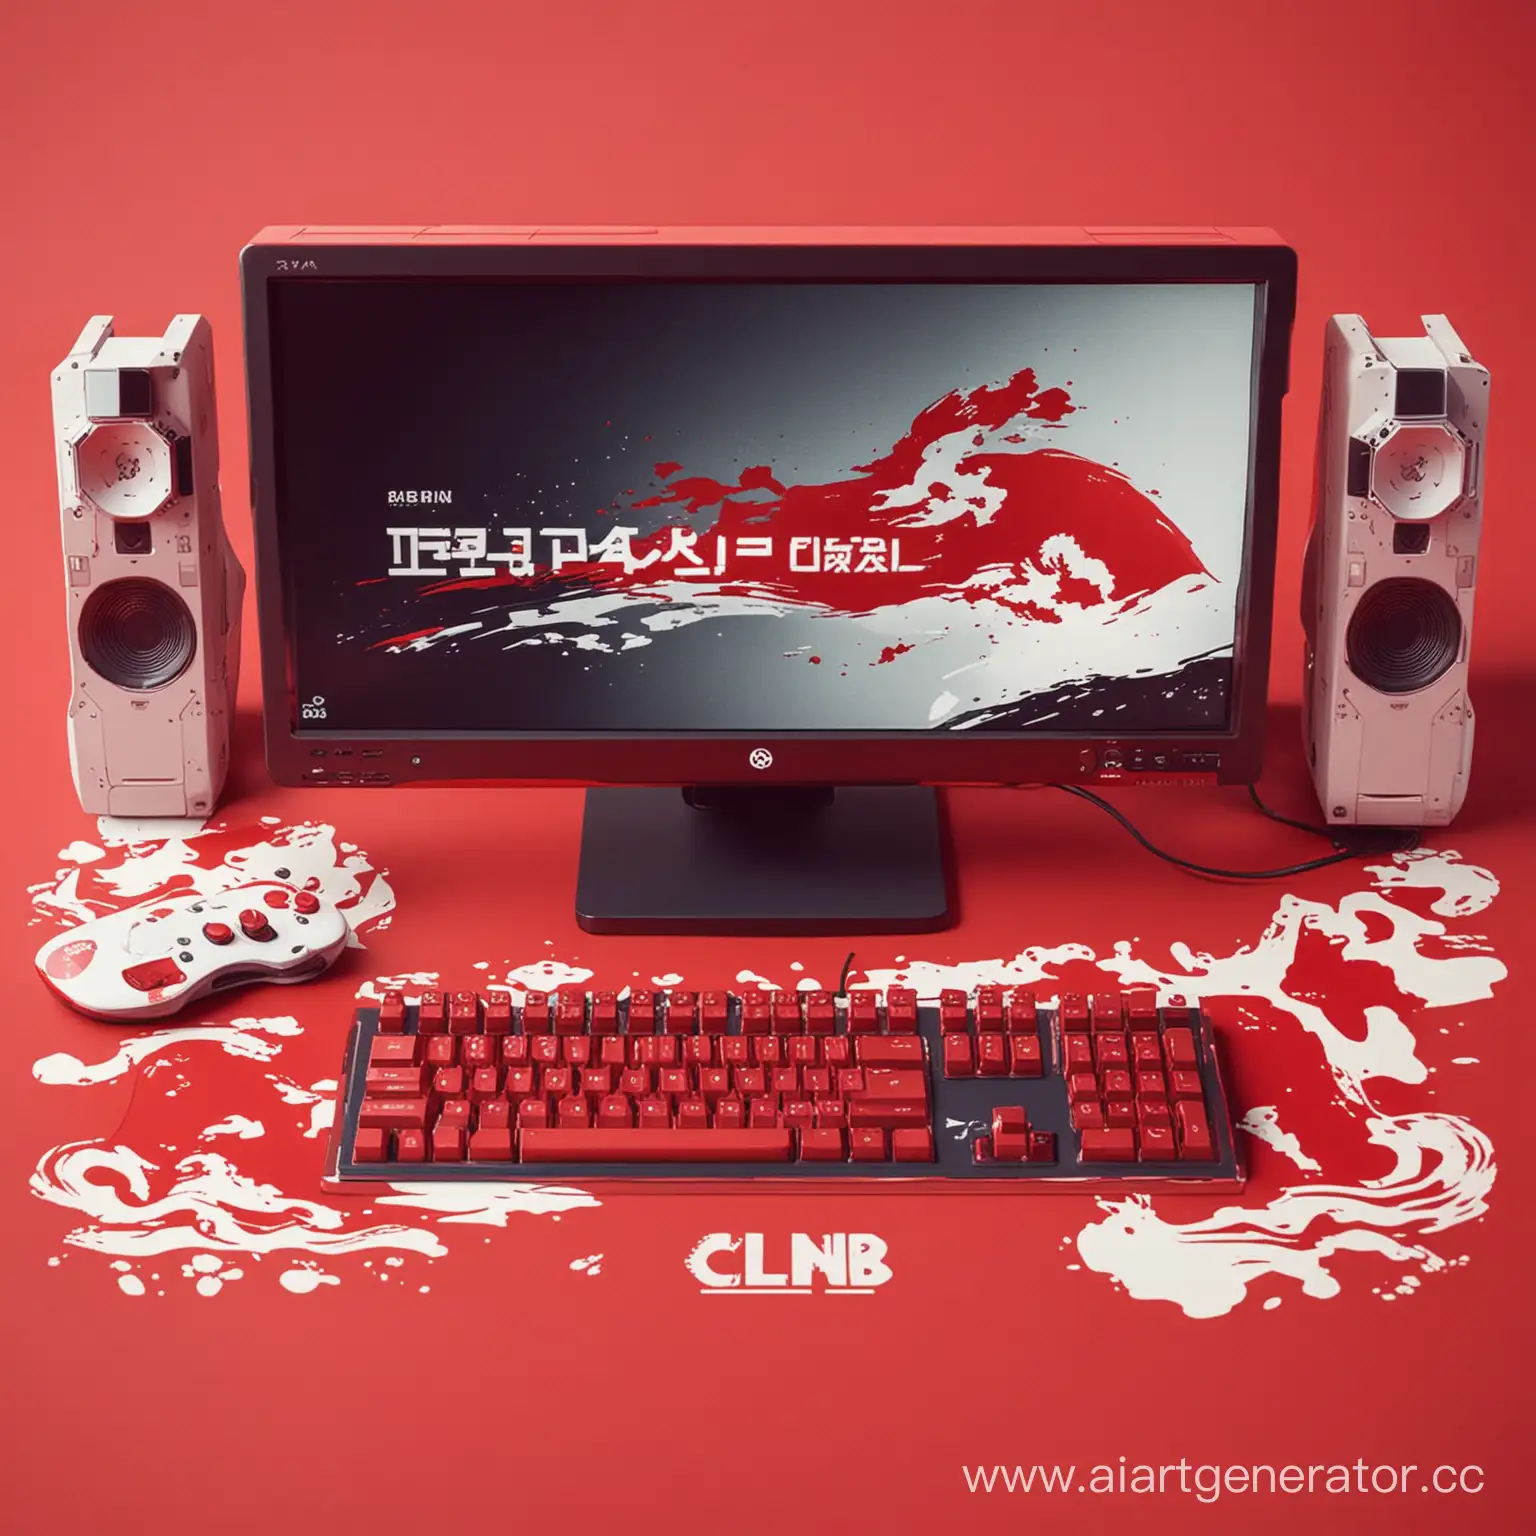 компьютерный игровой клуб в красных, белых и красных цветах в японском стиле